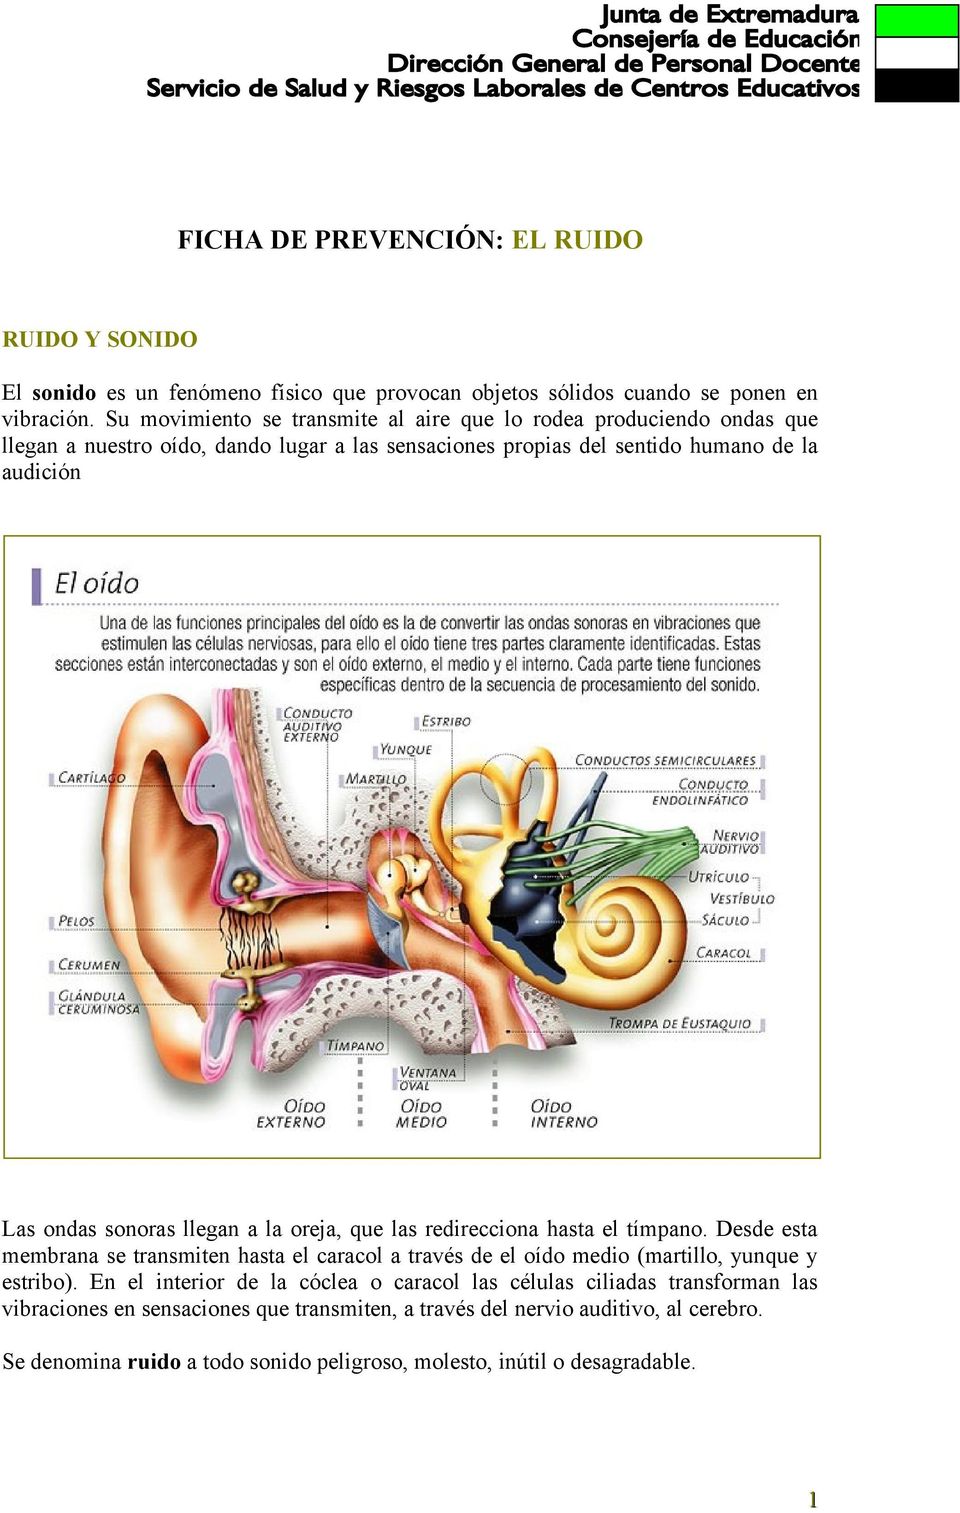 sonoras llegan a la oreja, que las redirecciona hasta el tímpano. Desde esta membrana se transmiten hasta el caracol a través de el oído medio (martillo, yunque y estribo).